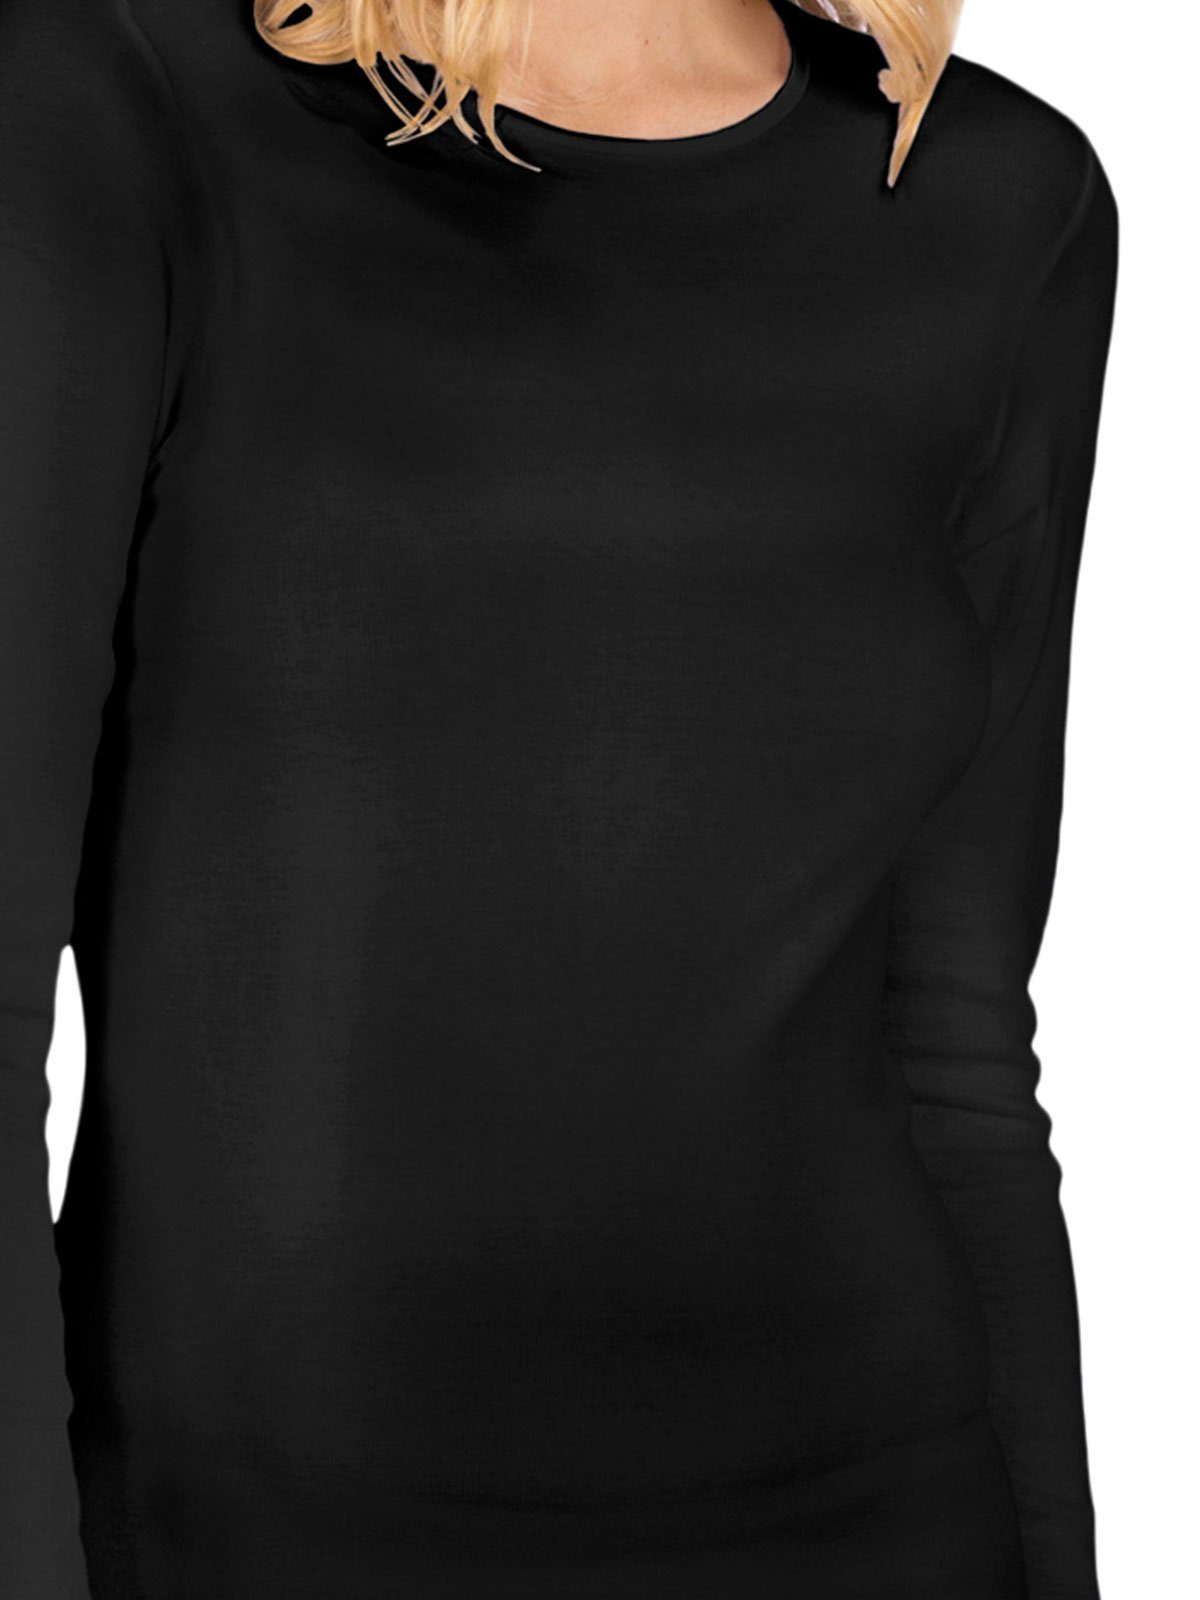 Langarm Unterhemd Von 3-St) C. Nina Fine Cotton Shirt - Damen schwarz (Packung,